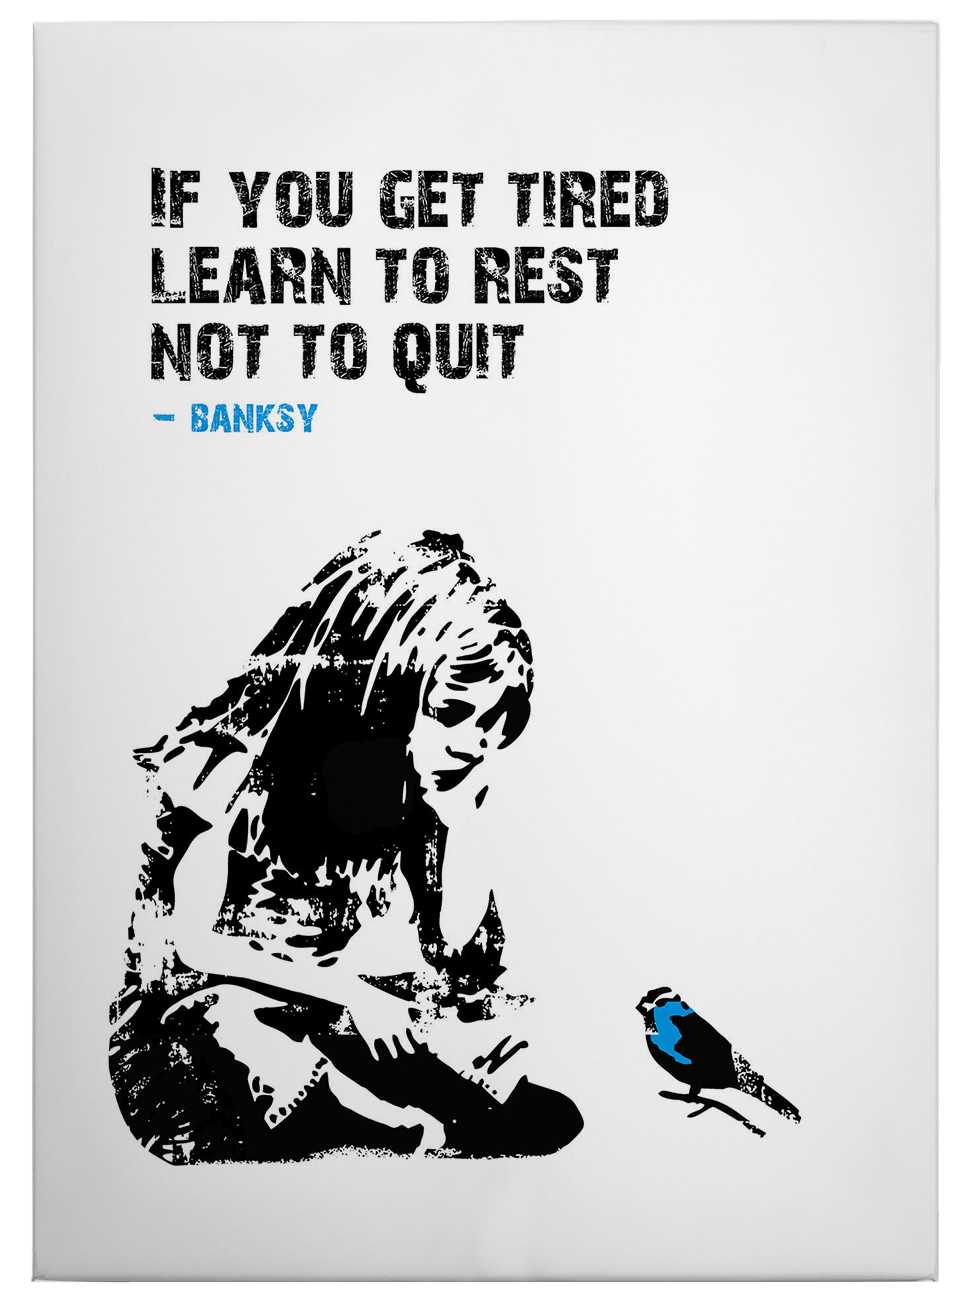             Canvas schilderij "Als je moe wordt" van Banksy - 0.50 m x 0.70 m
        